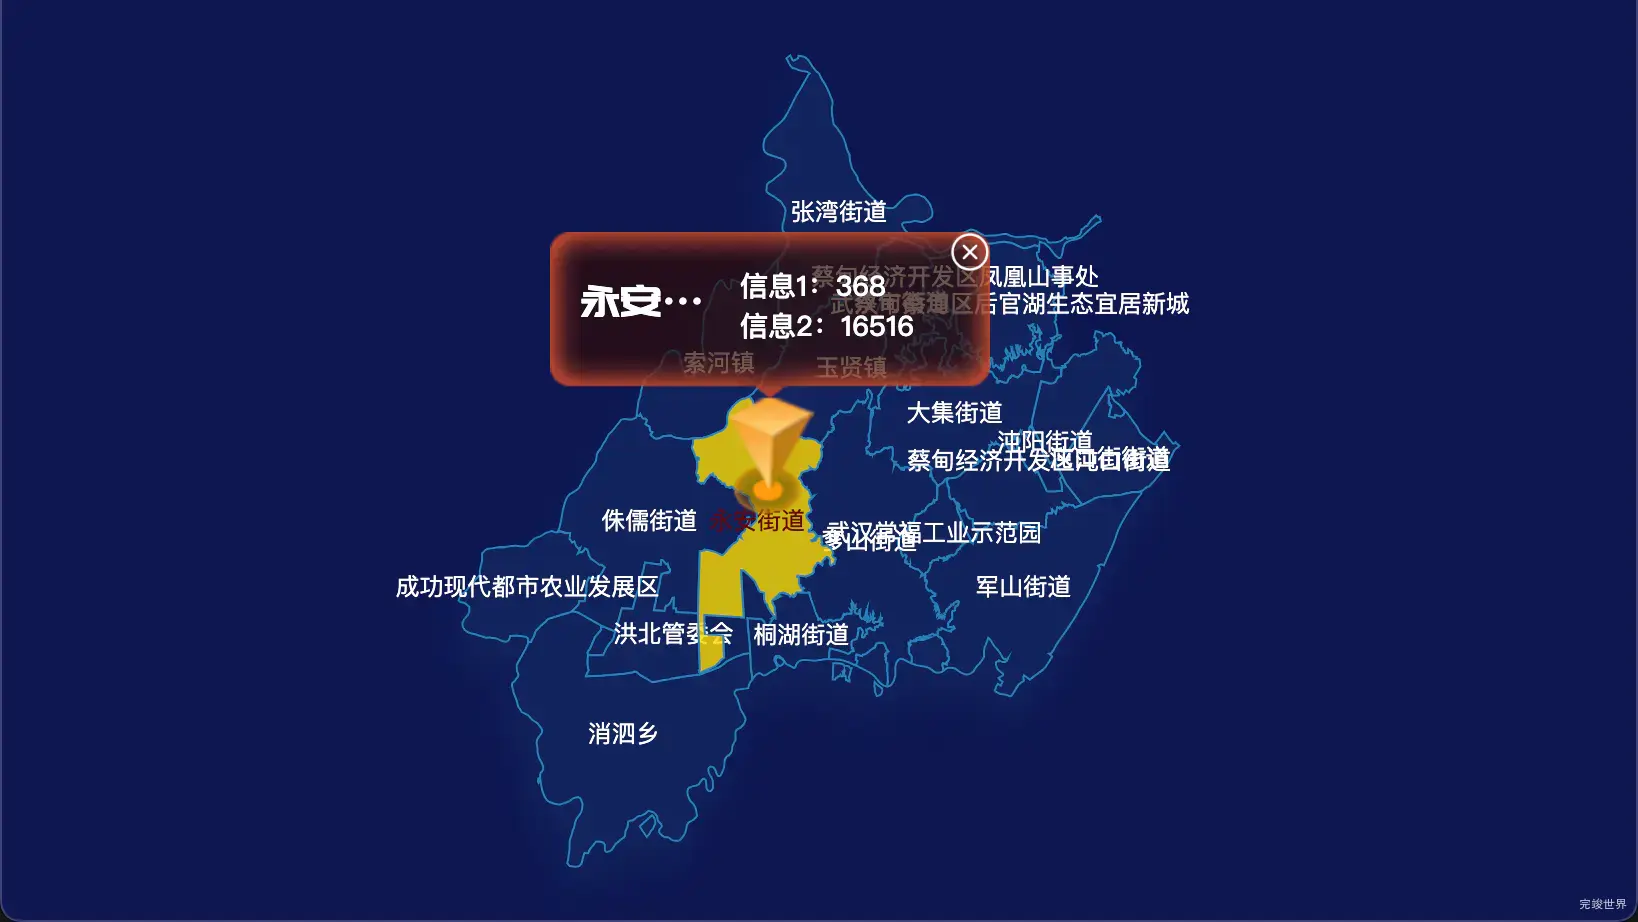 echarts 武汉市蔡甸区geoJson地图点击弹出自定义弹窗